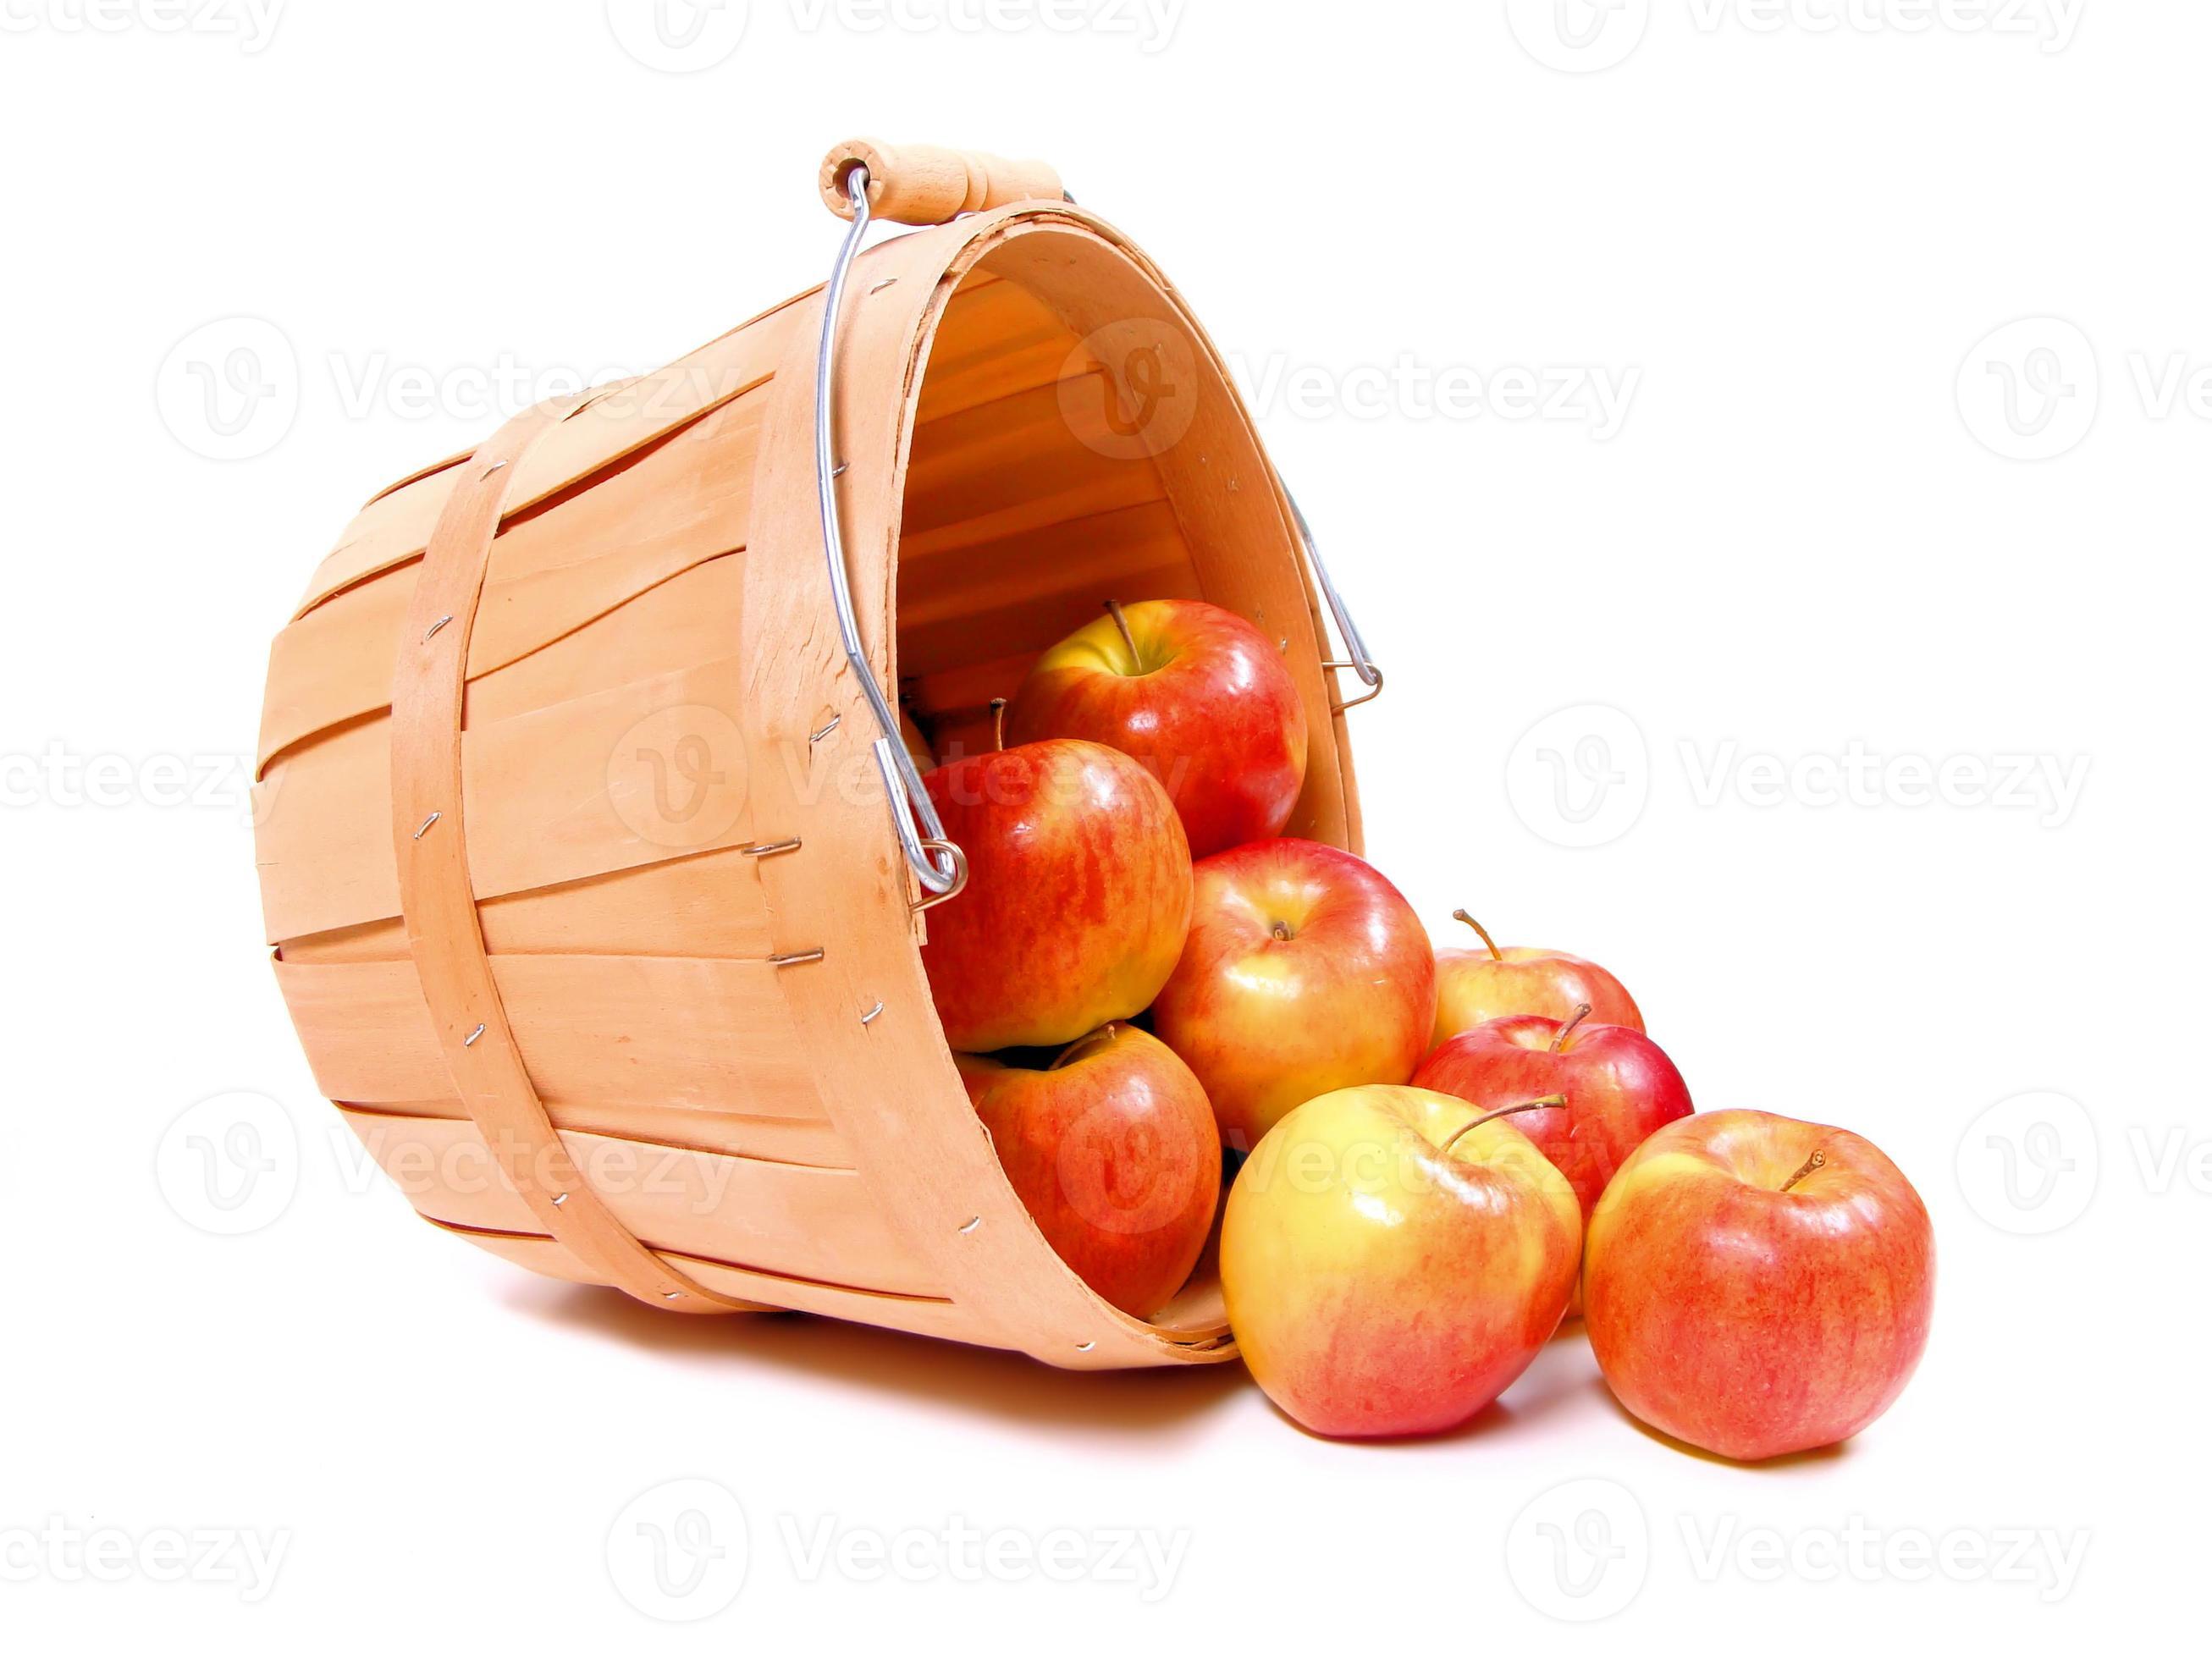 В корзину положили яблок